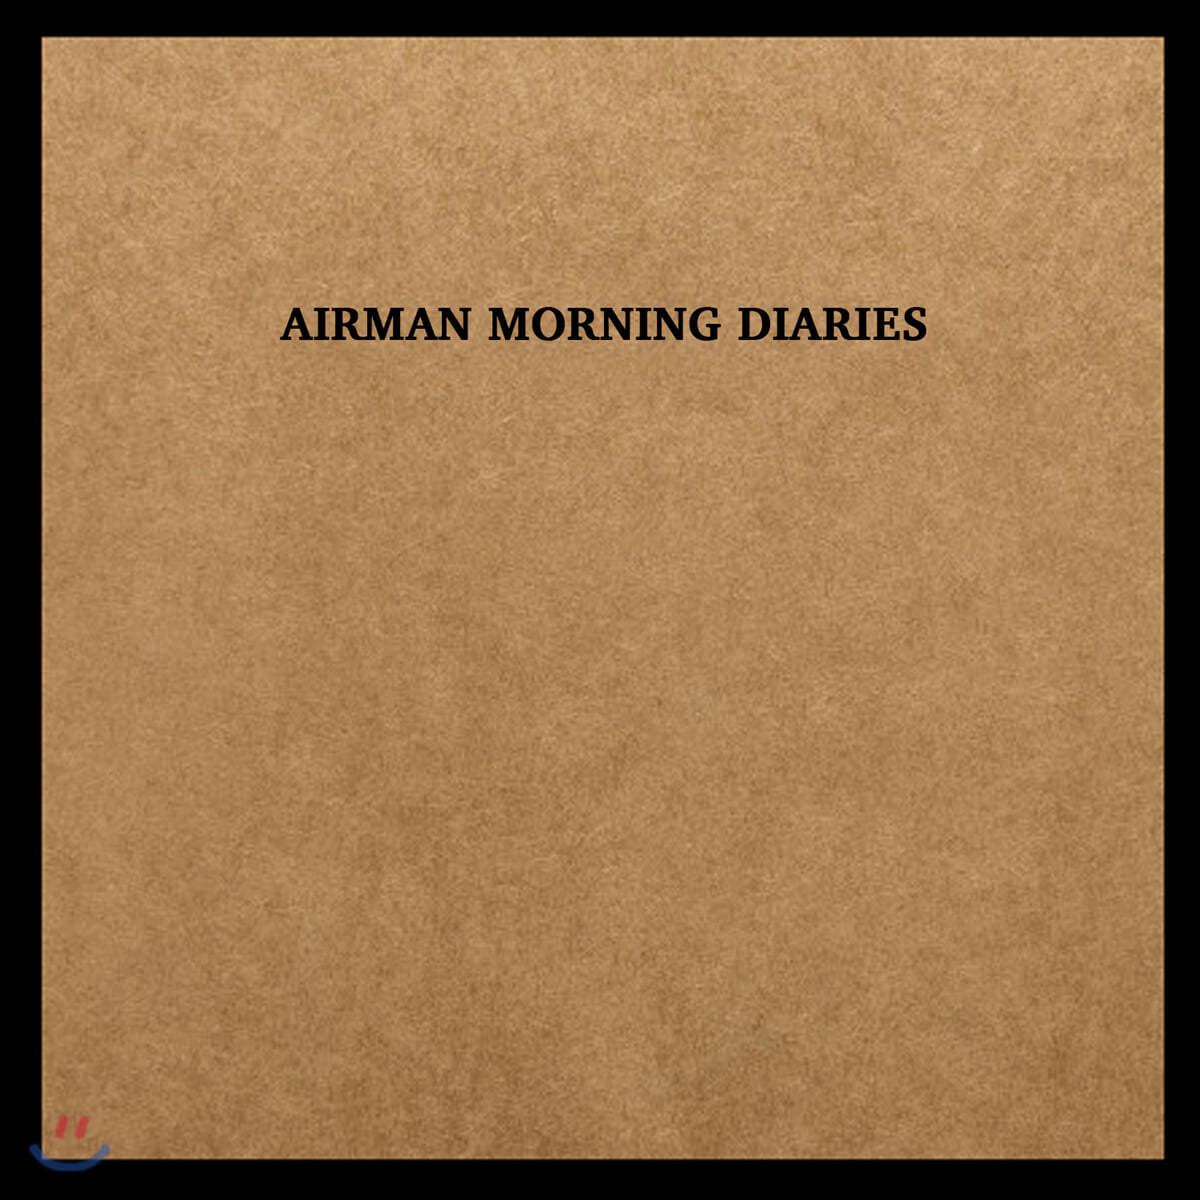 공기남(Airman) - 새벽일기